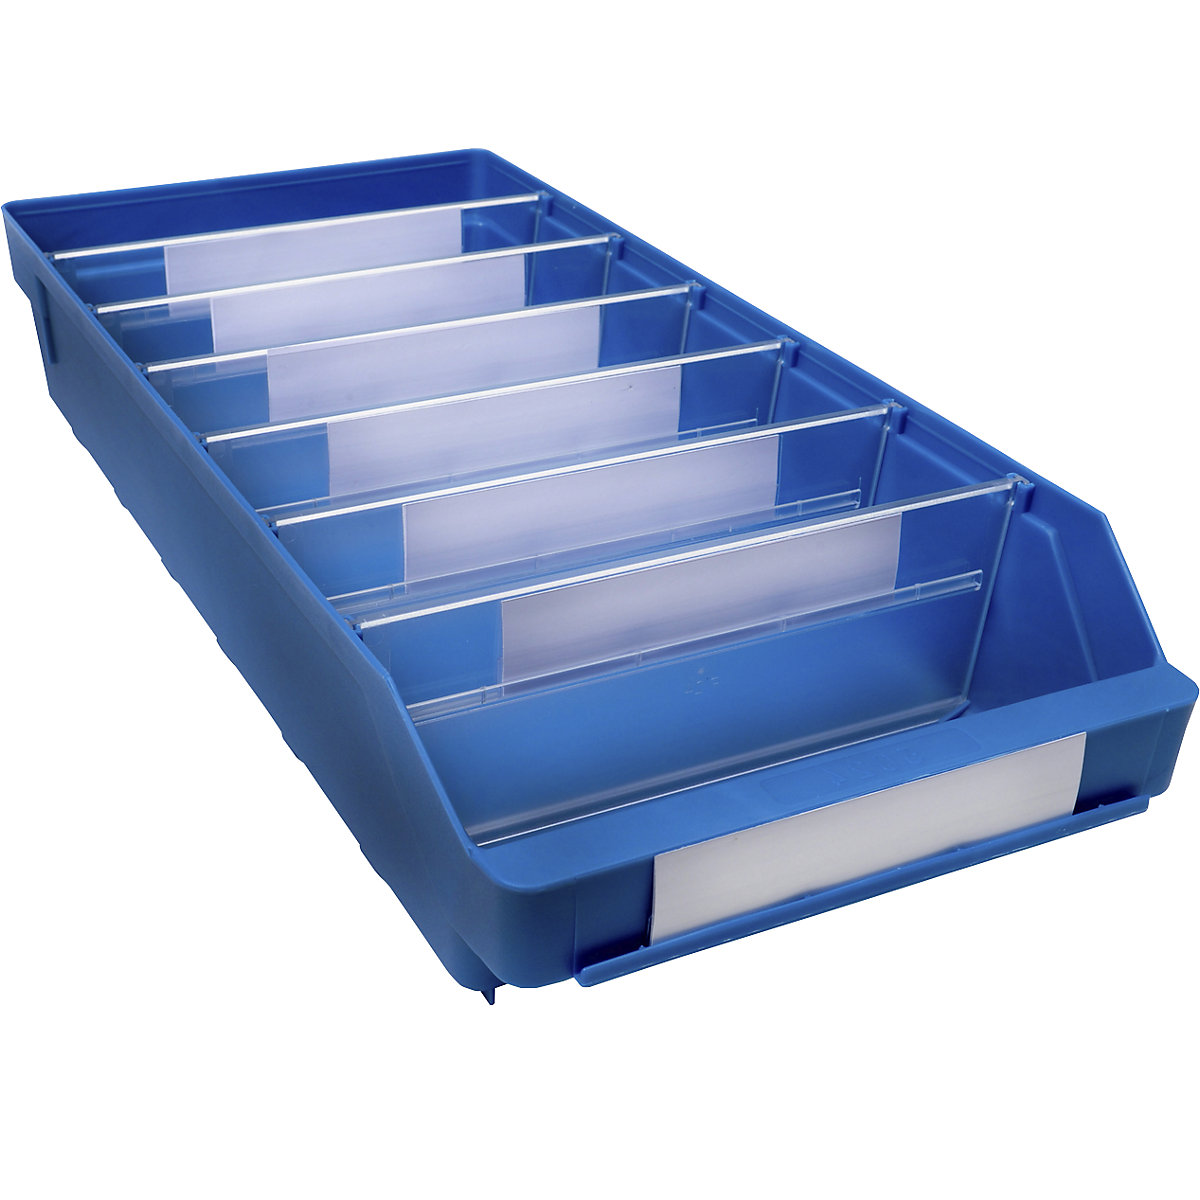 Regalkasten aus hochschlagfestem Polypropylen STEMO, blau, LxBxH 500 x 240 x 95 mm, VE 15 Stk-19